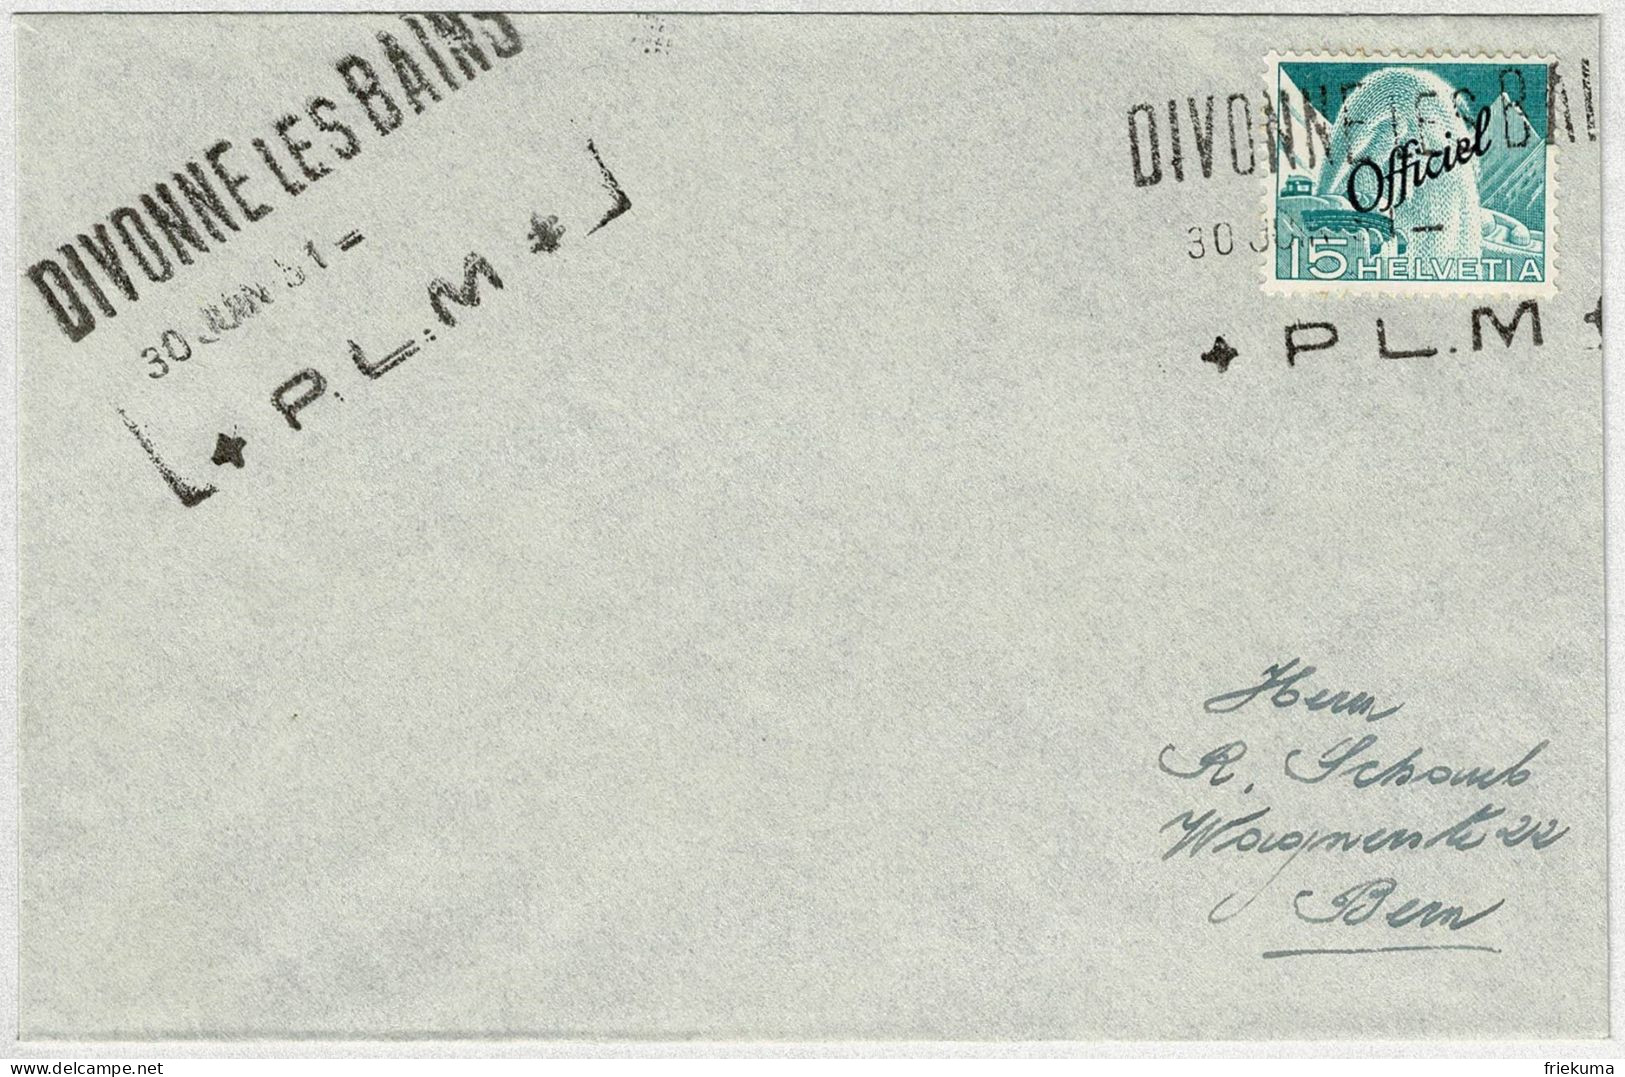 Schweiz 1951, Brief Schiffstation Divonne Les Bains PL.M, Technik Und Landschaft Officiel - Oficial